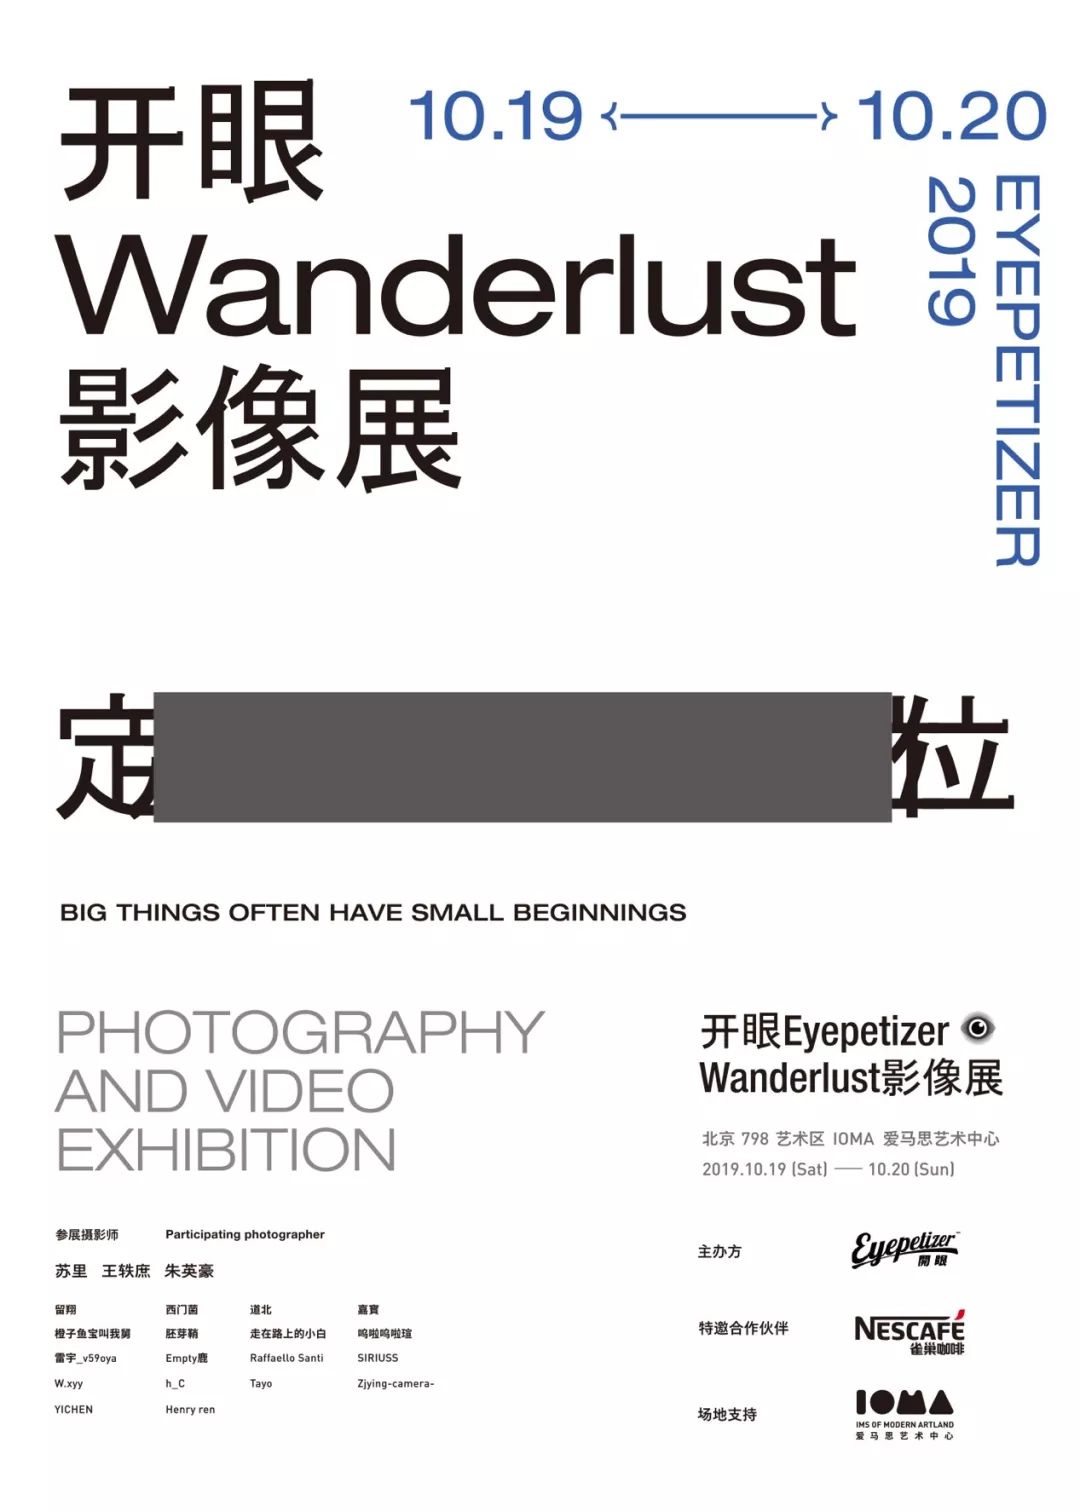 定位-开眼wanderlust影像展 10.19-10.20@ioma爱马思艺术中心